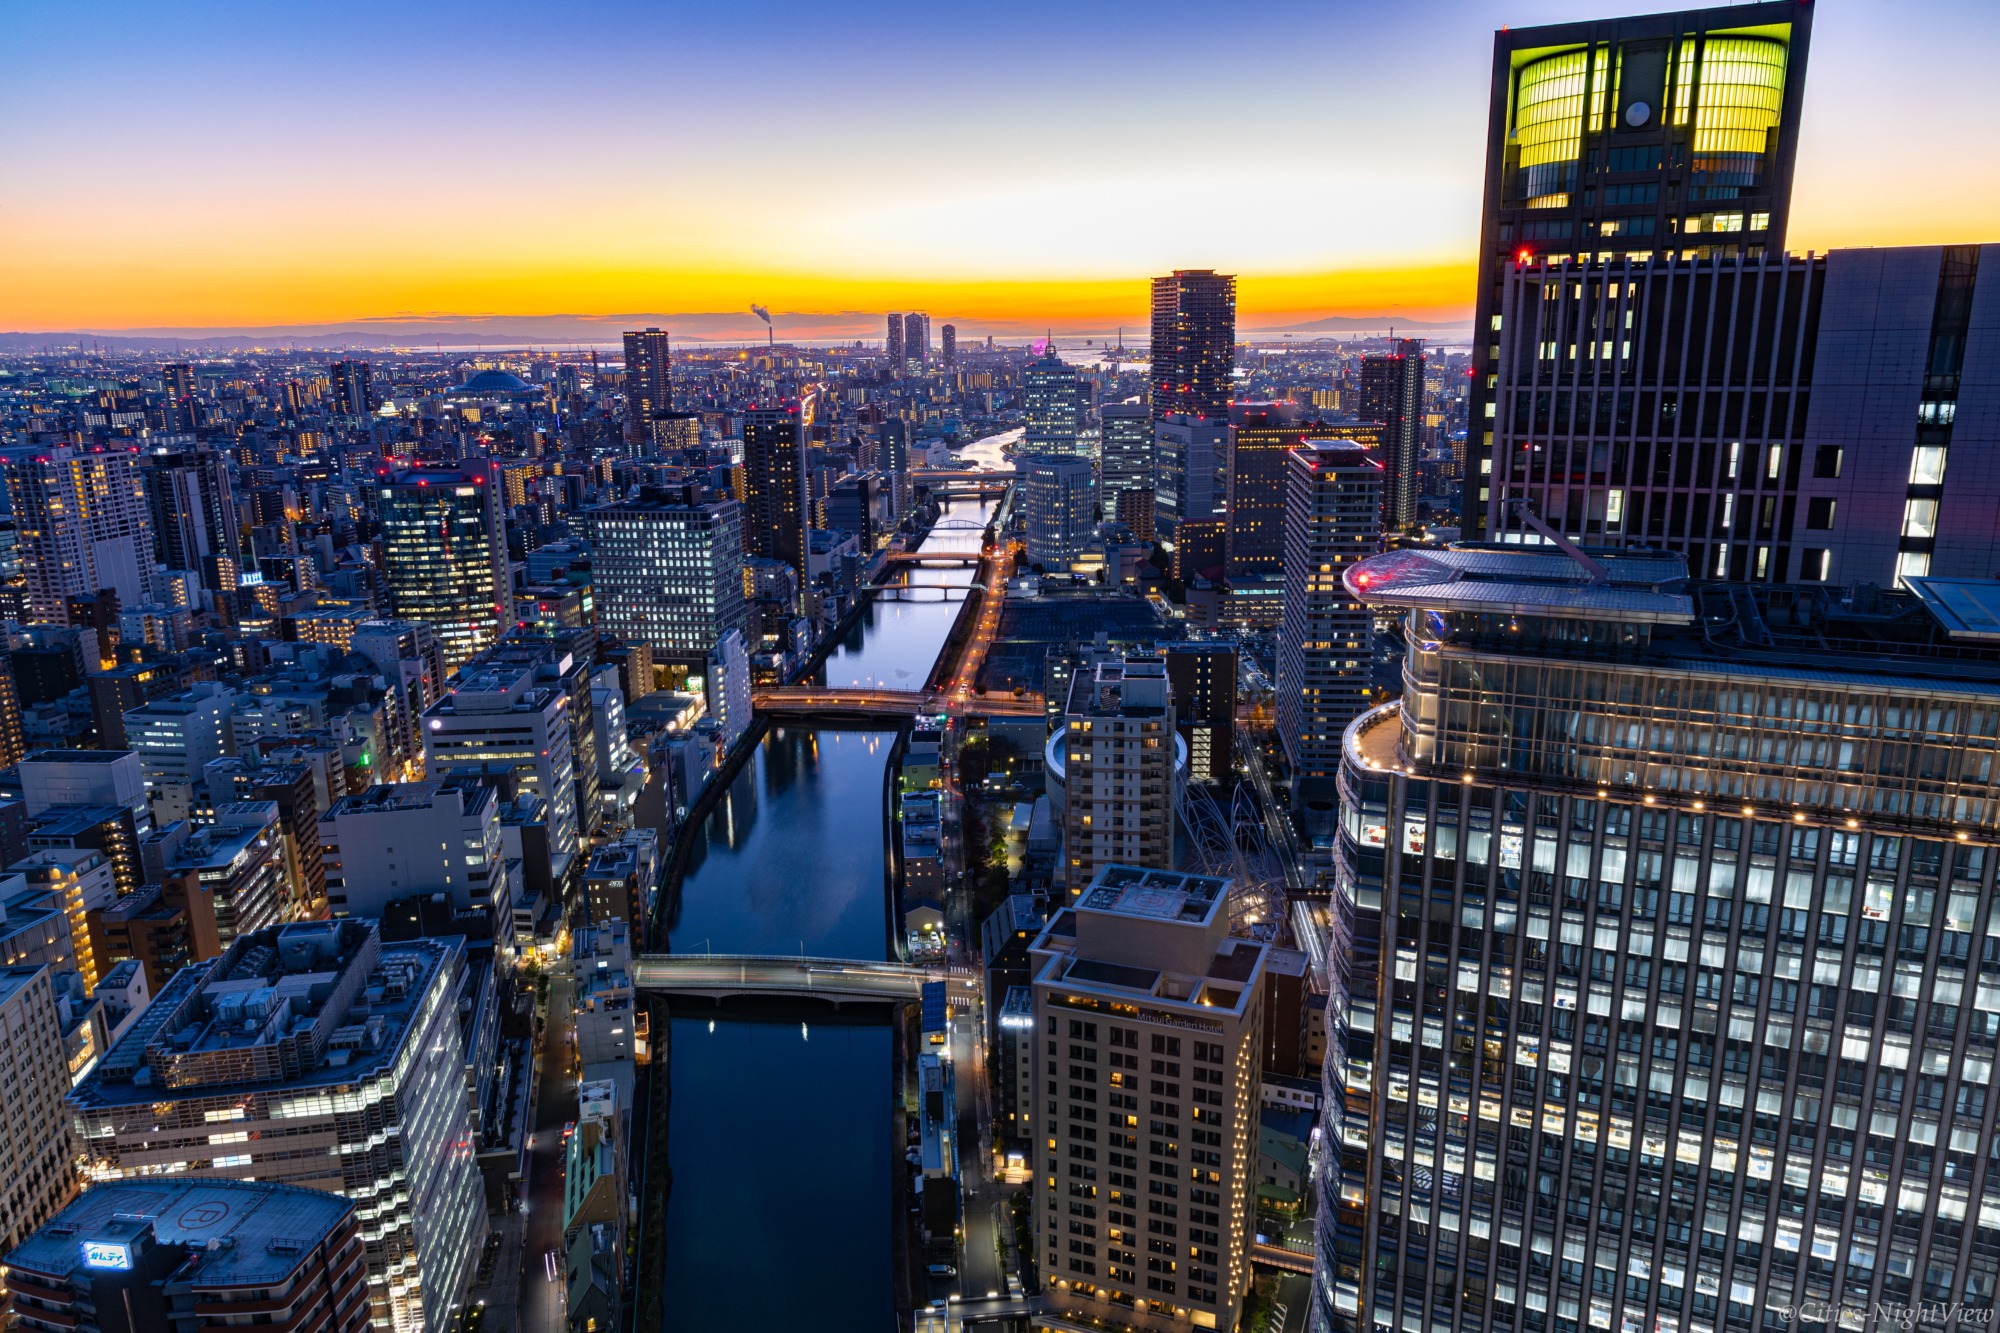 ホテル撮影記 －コンラッド大阪 コーナールームからの眺め 夜景編